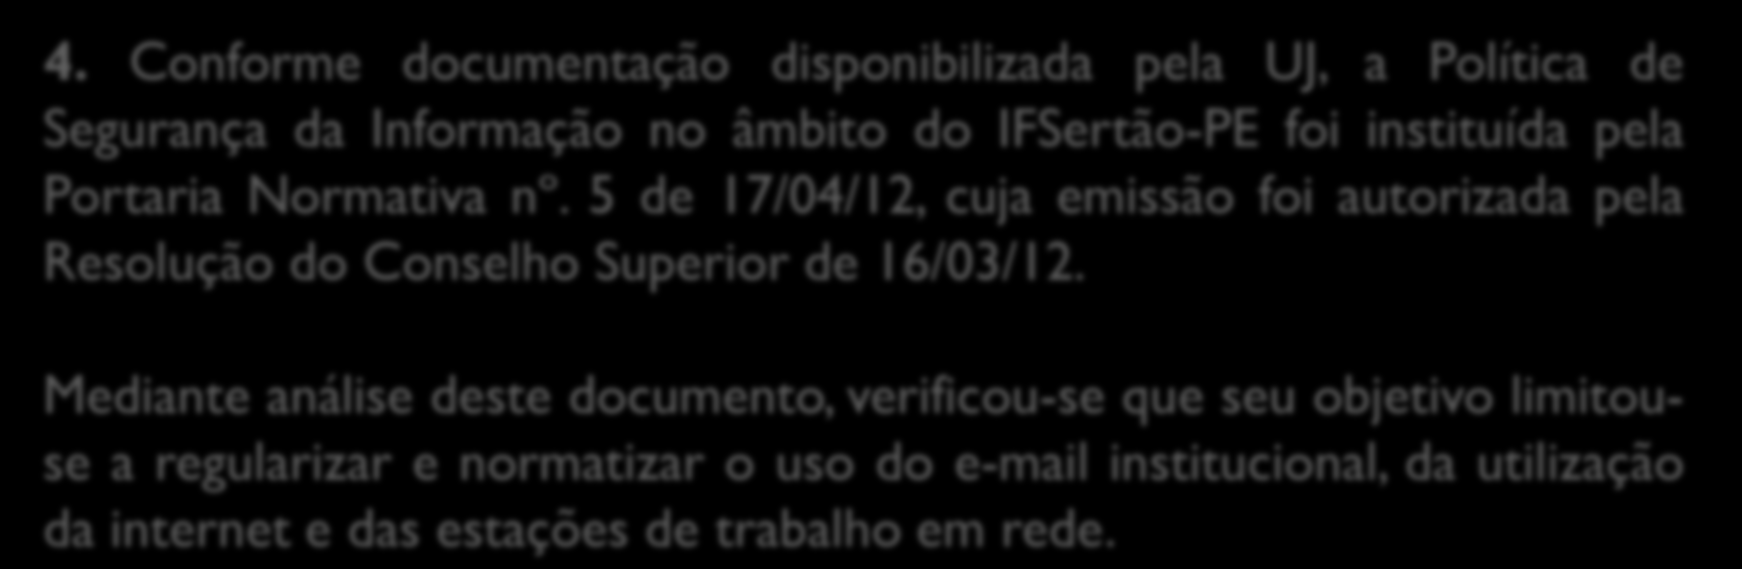 CGU 2 Auditoria Número: 201211934/002 Solicitação de Auditoria Recife/PE 14/02/2013 4.